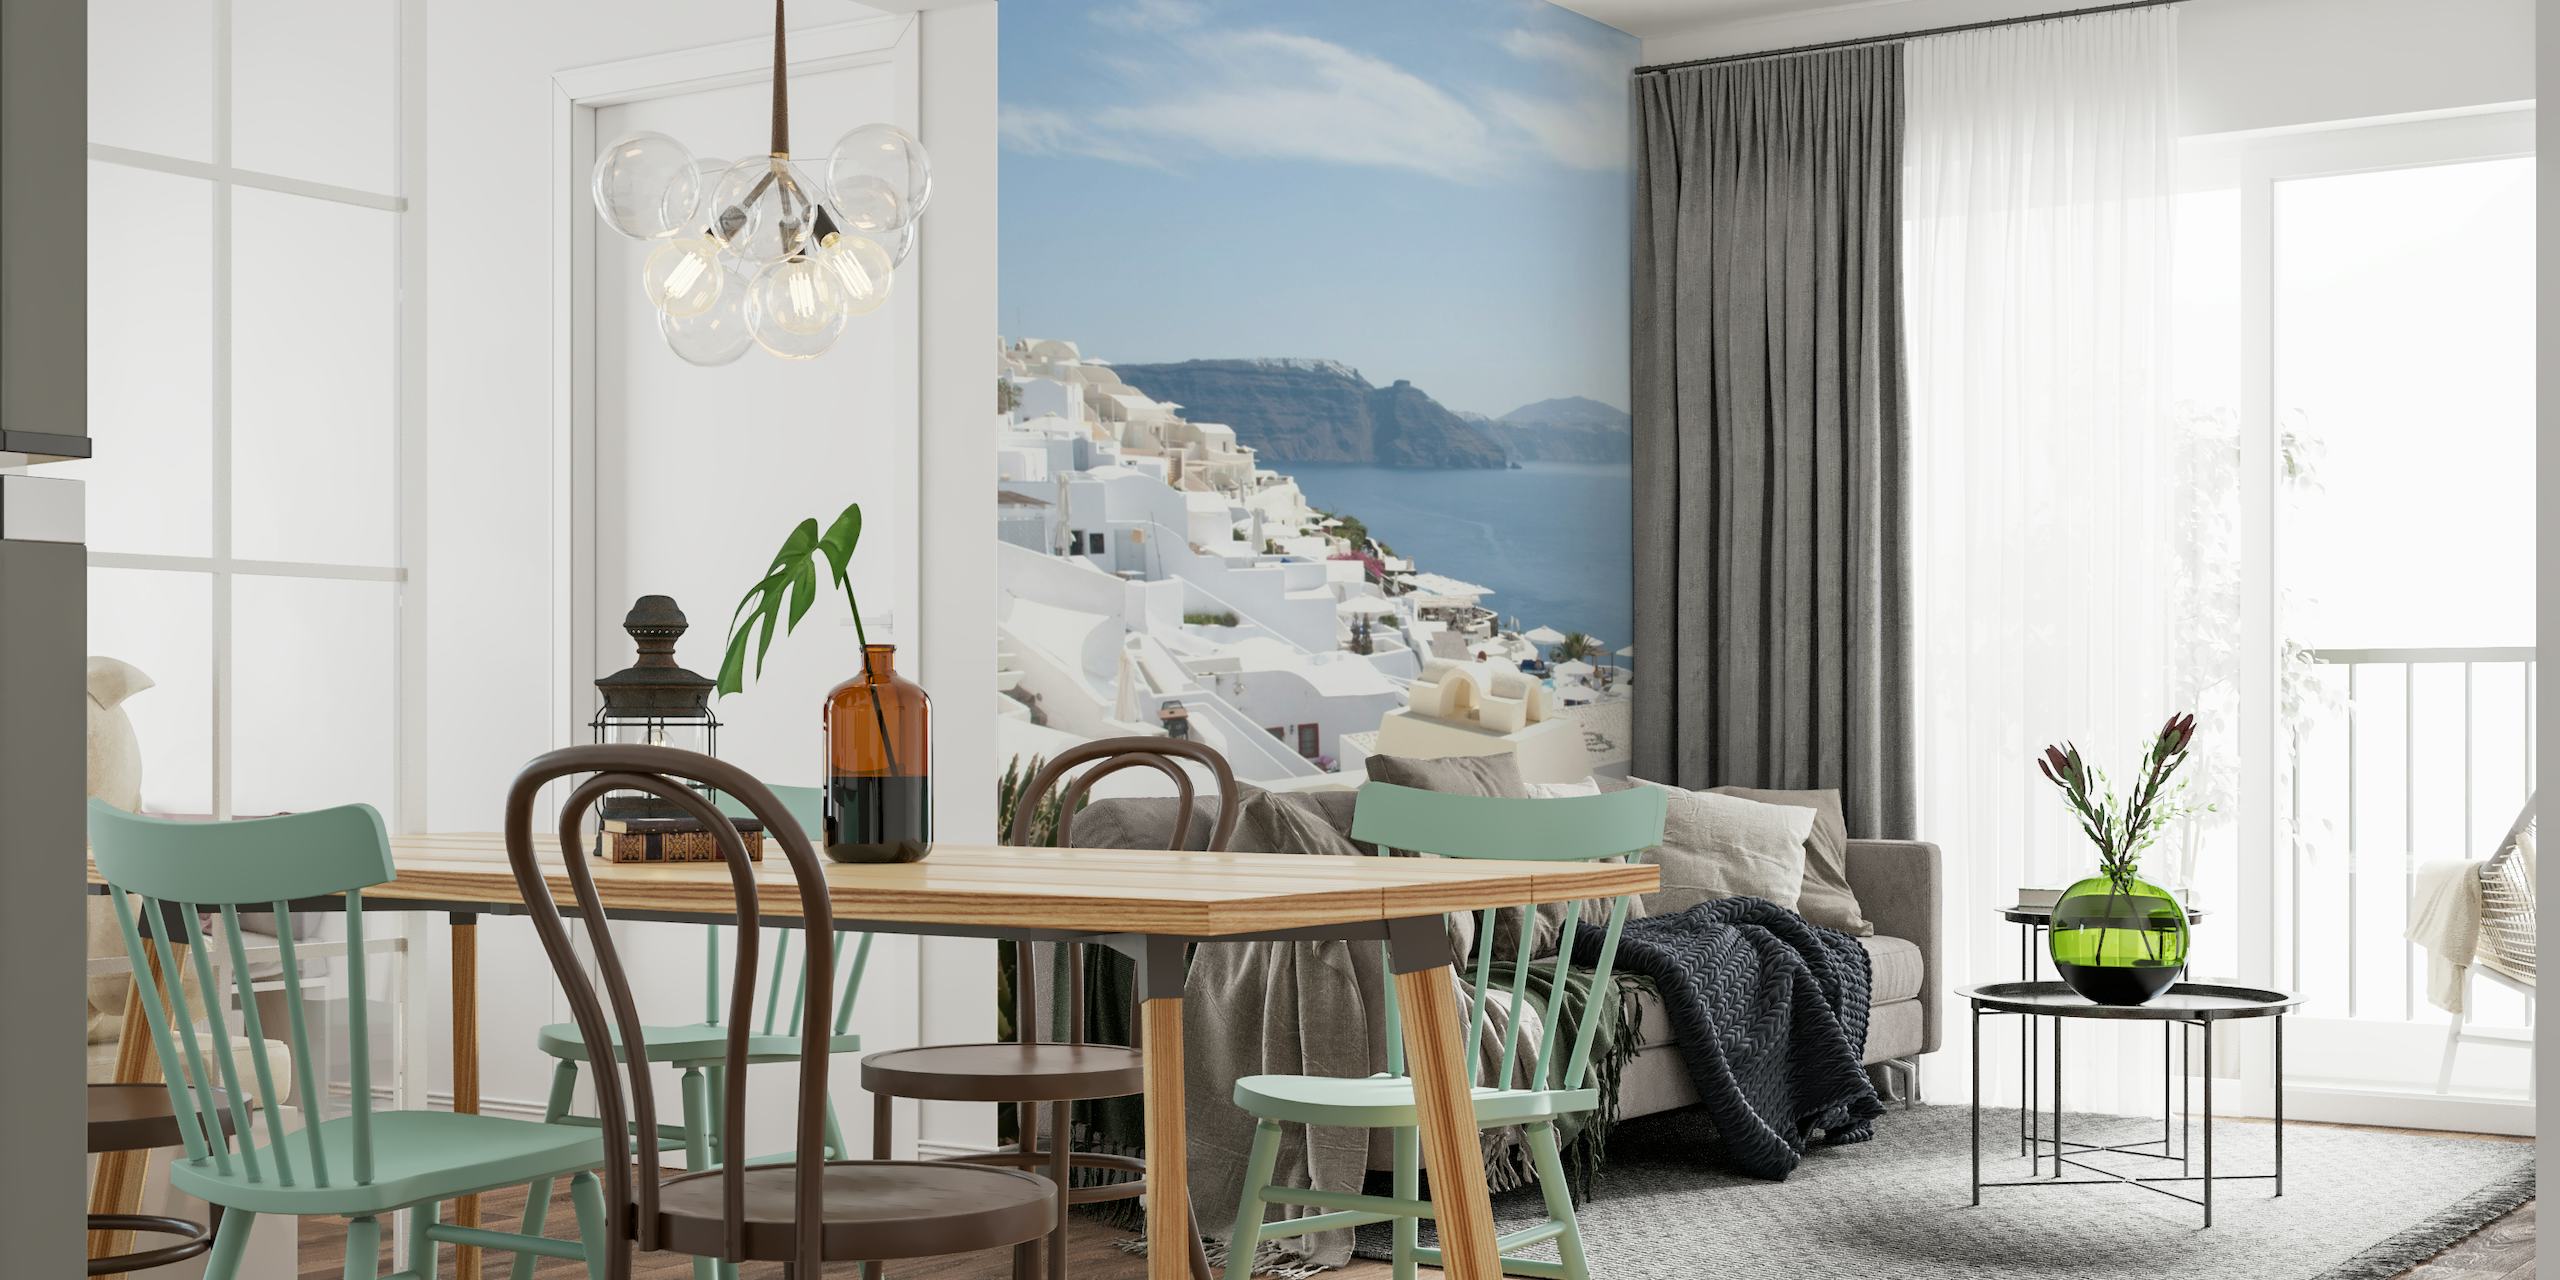 Fotomural vinílico de parede com cena da vila de Santorini Oia com céu limpo e vista para o Mar Egeu